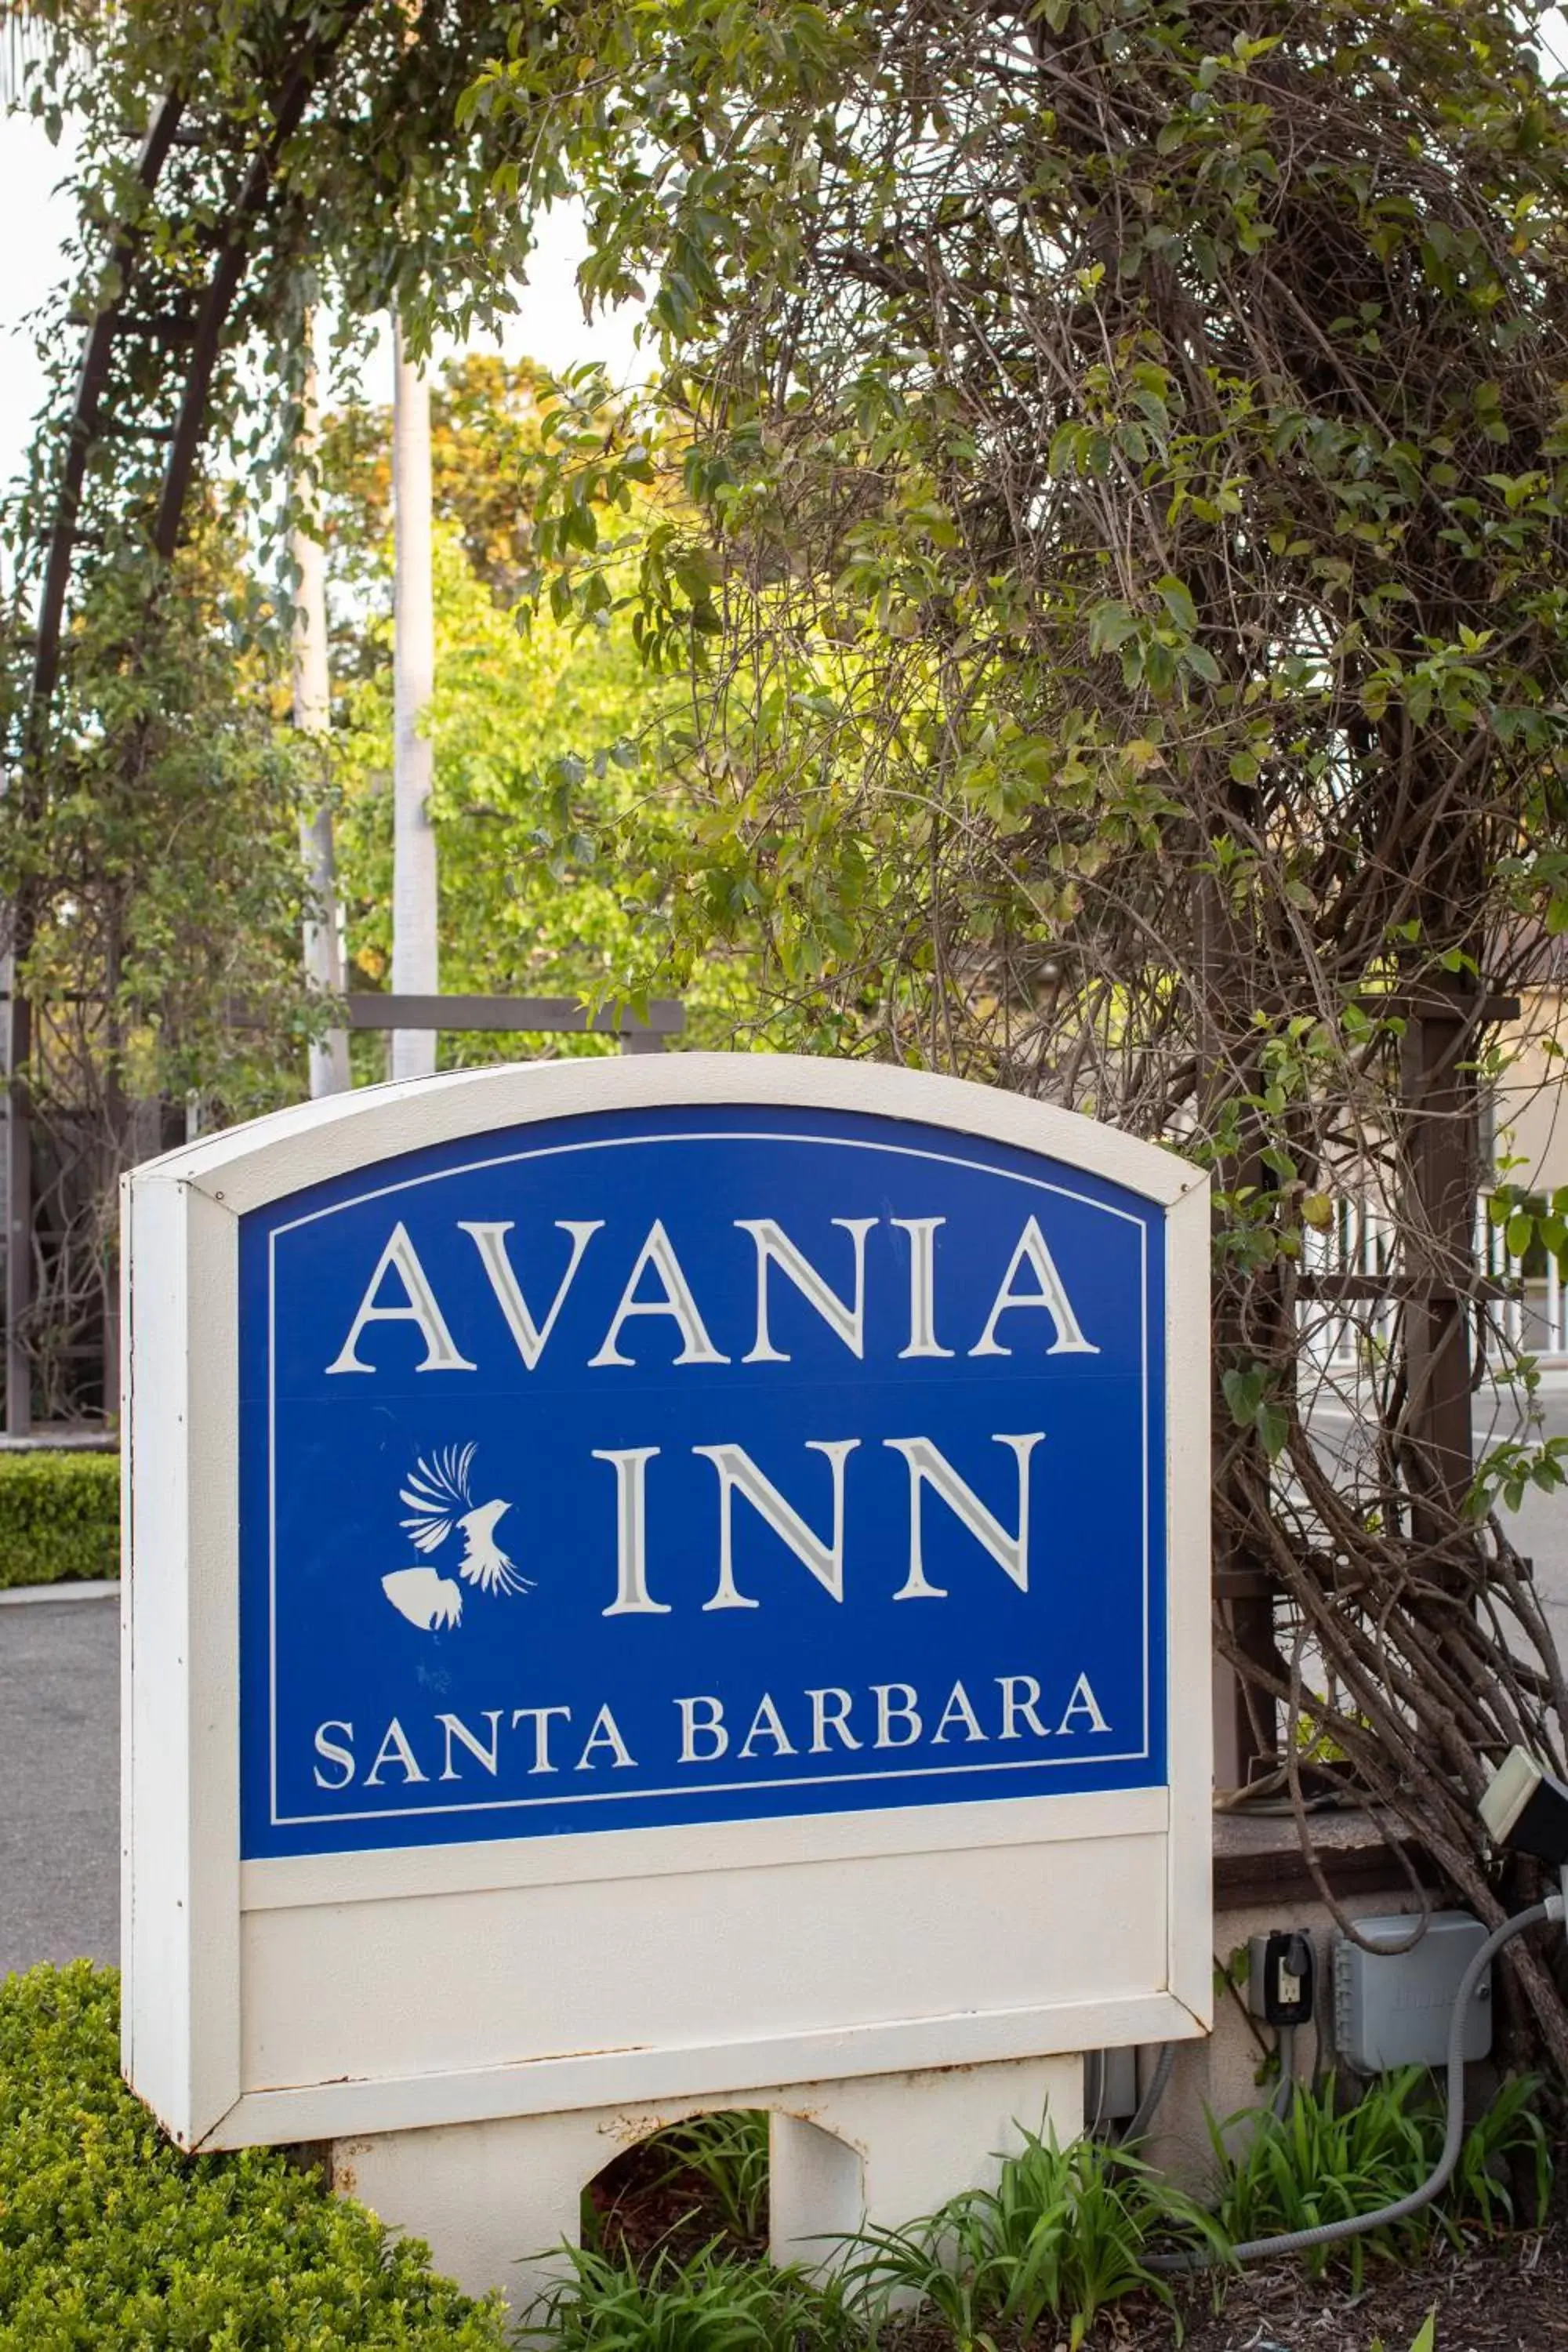 Property logo or sign in Avania Inn of Santa Barbara